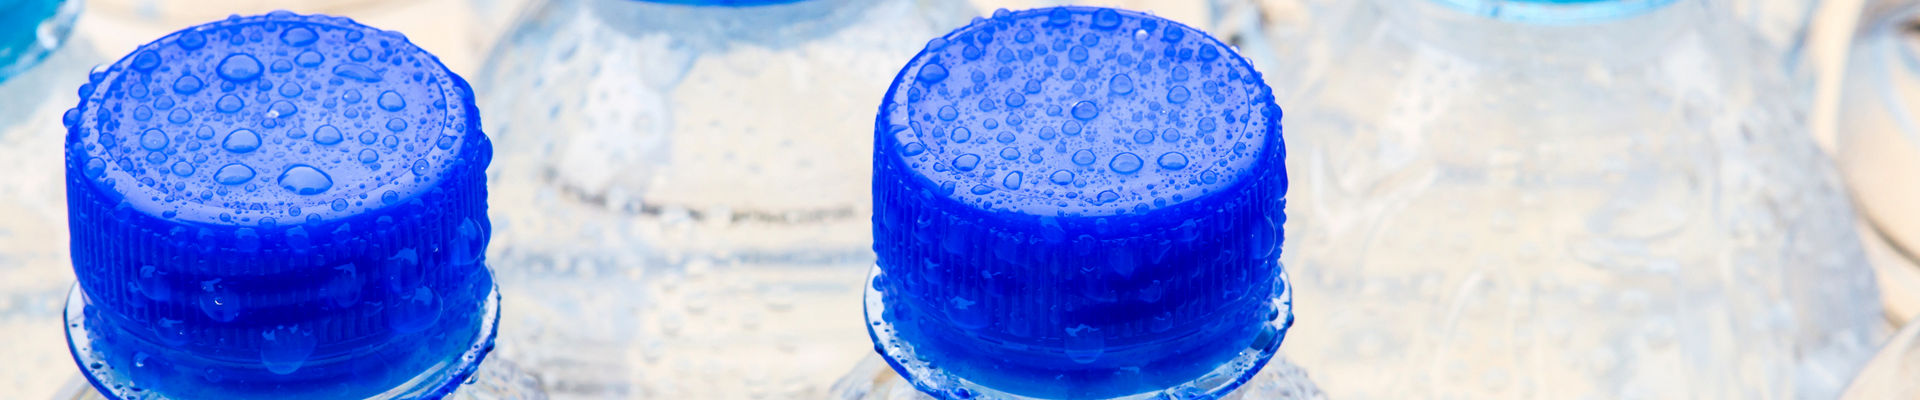 Botella de plástico con agua potable